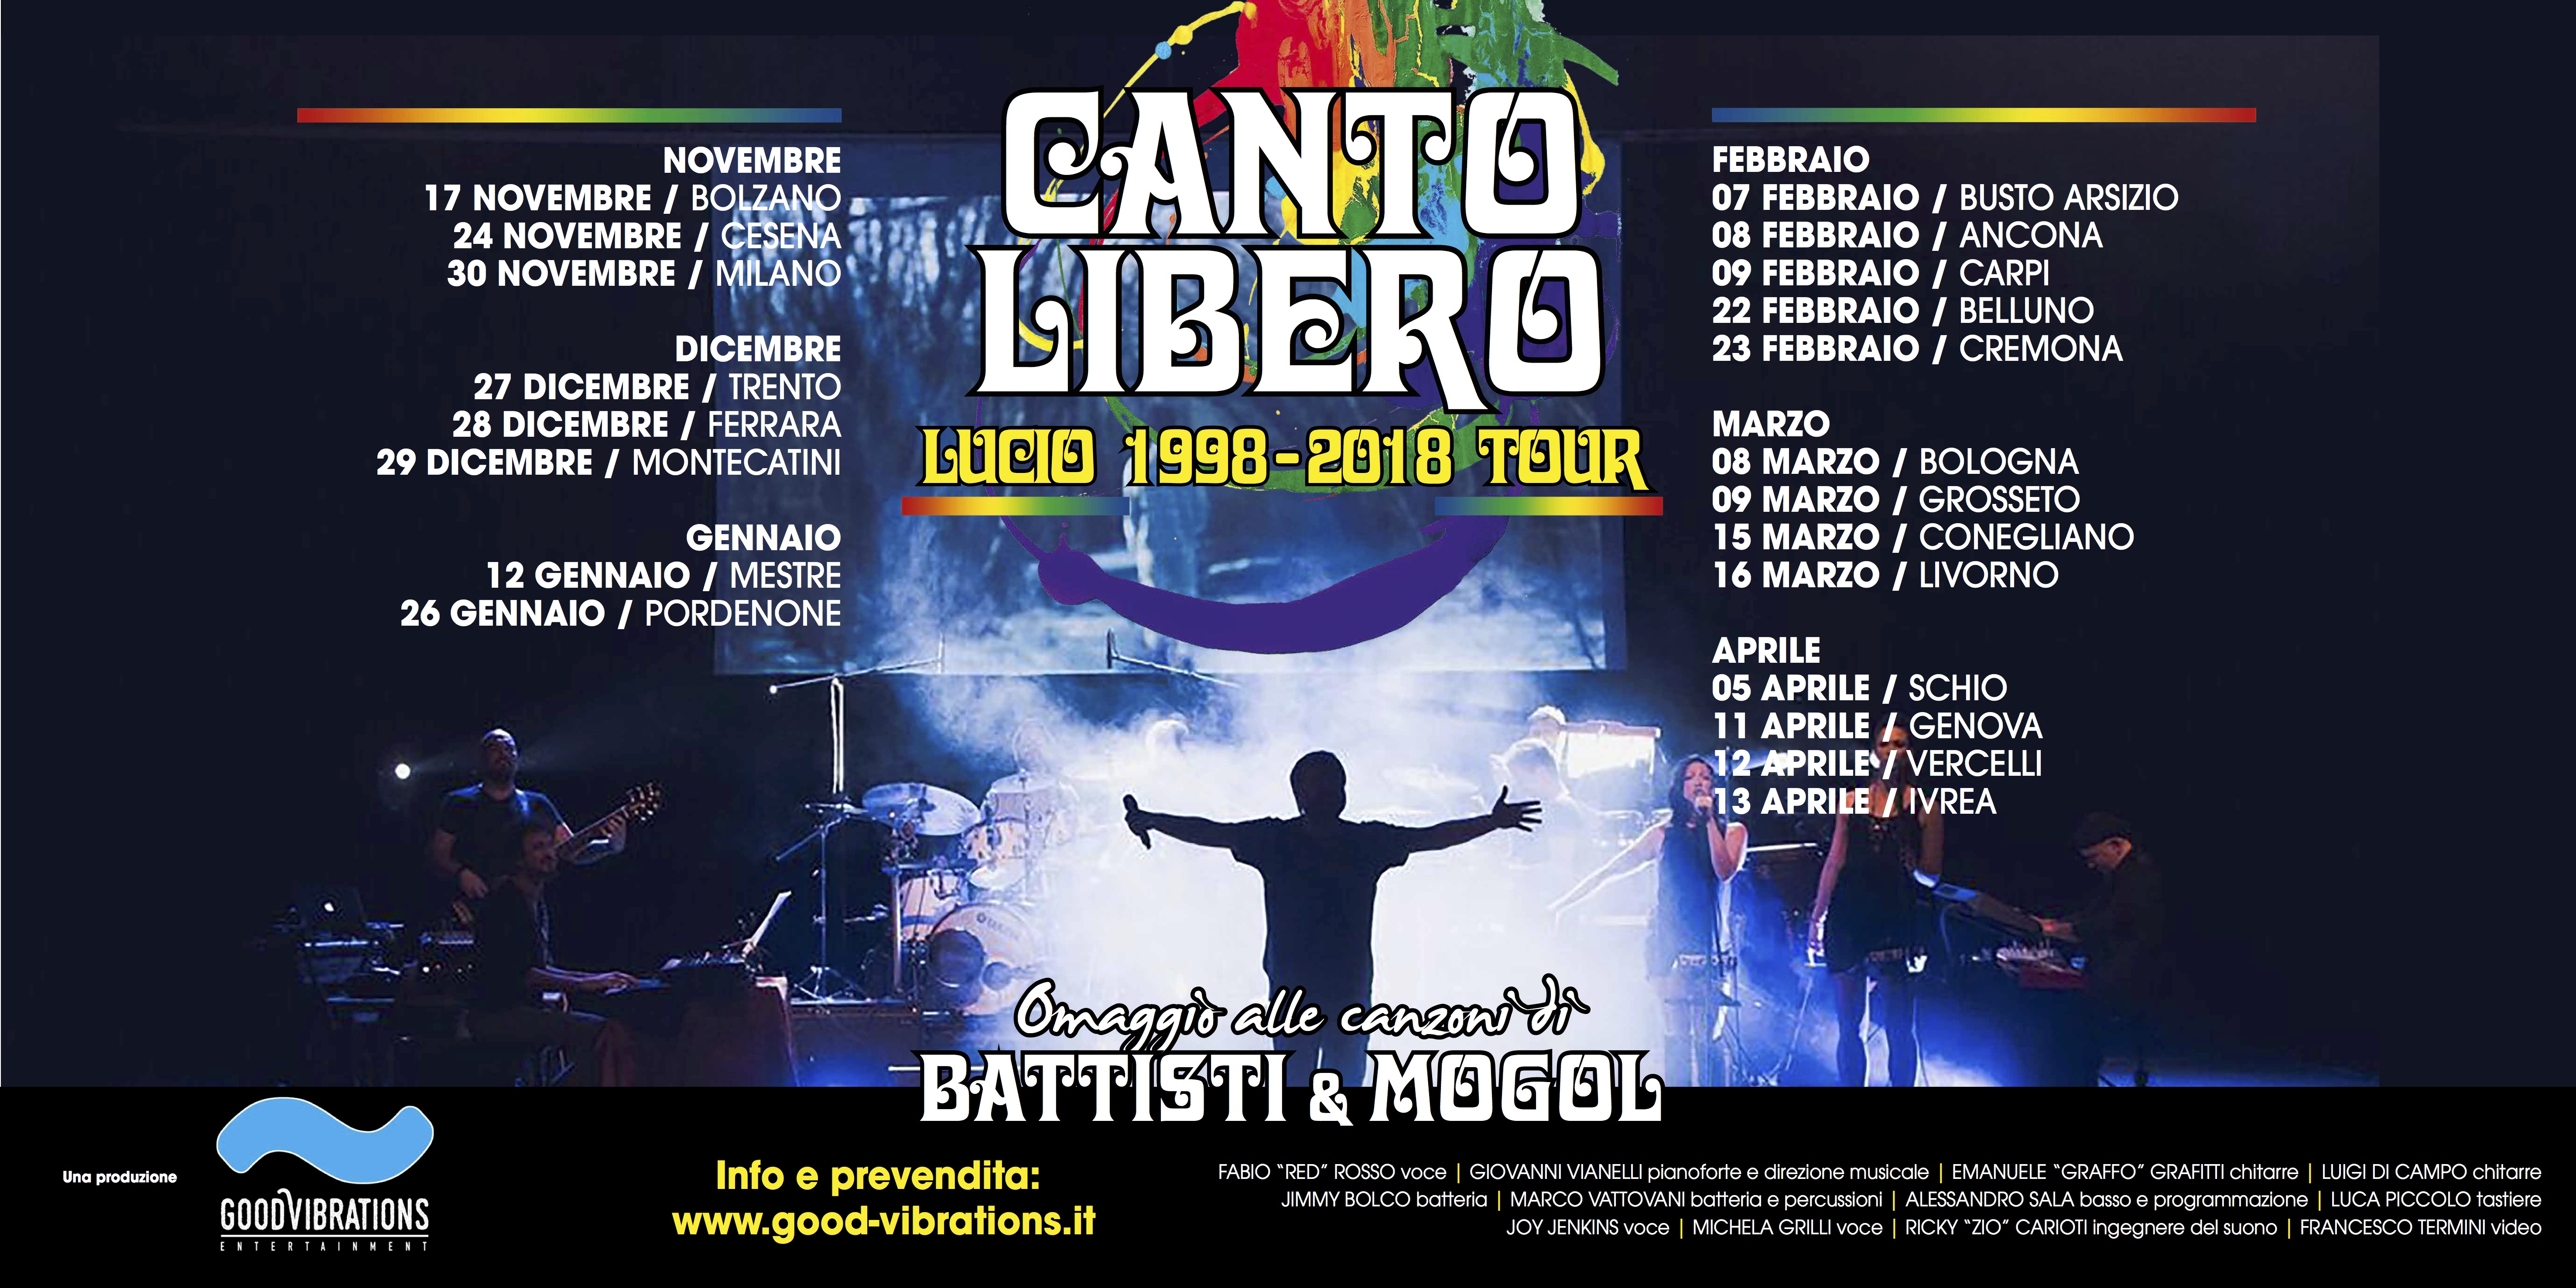 Annuncio date Canto Libero “Lucio 1998-2018 Tour”